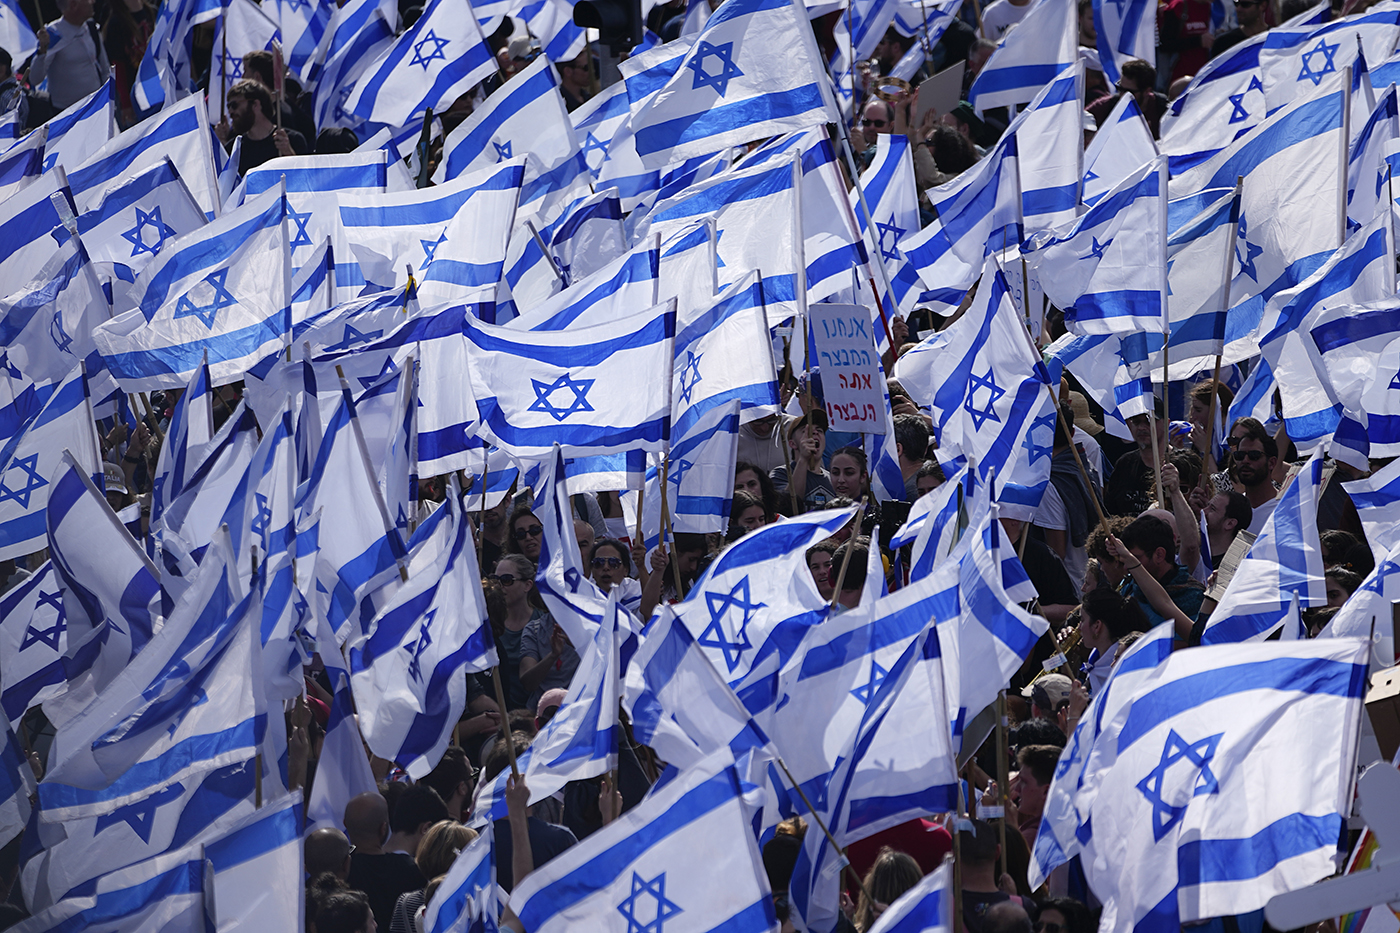 crowd of protestors waving Israeli flags